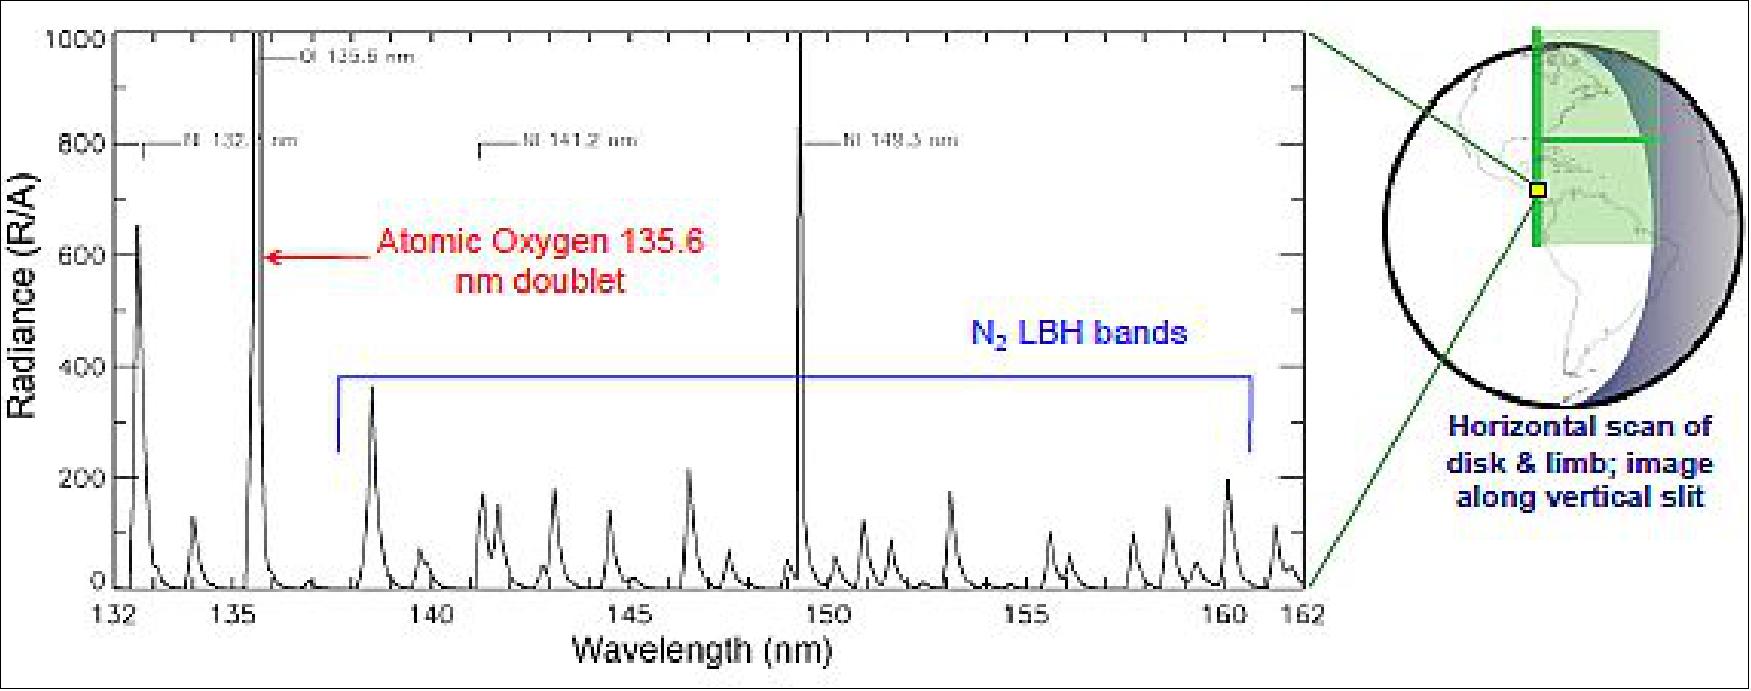 Figure 35: Daytime FUV (Far-Ultraviolet) spectrum (image credit: GOLD Team)